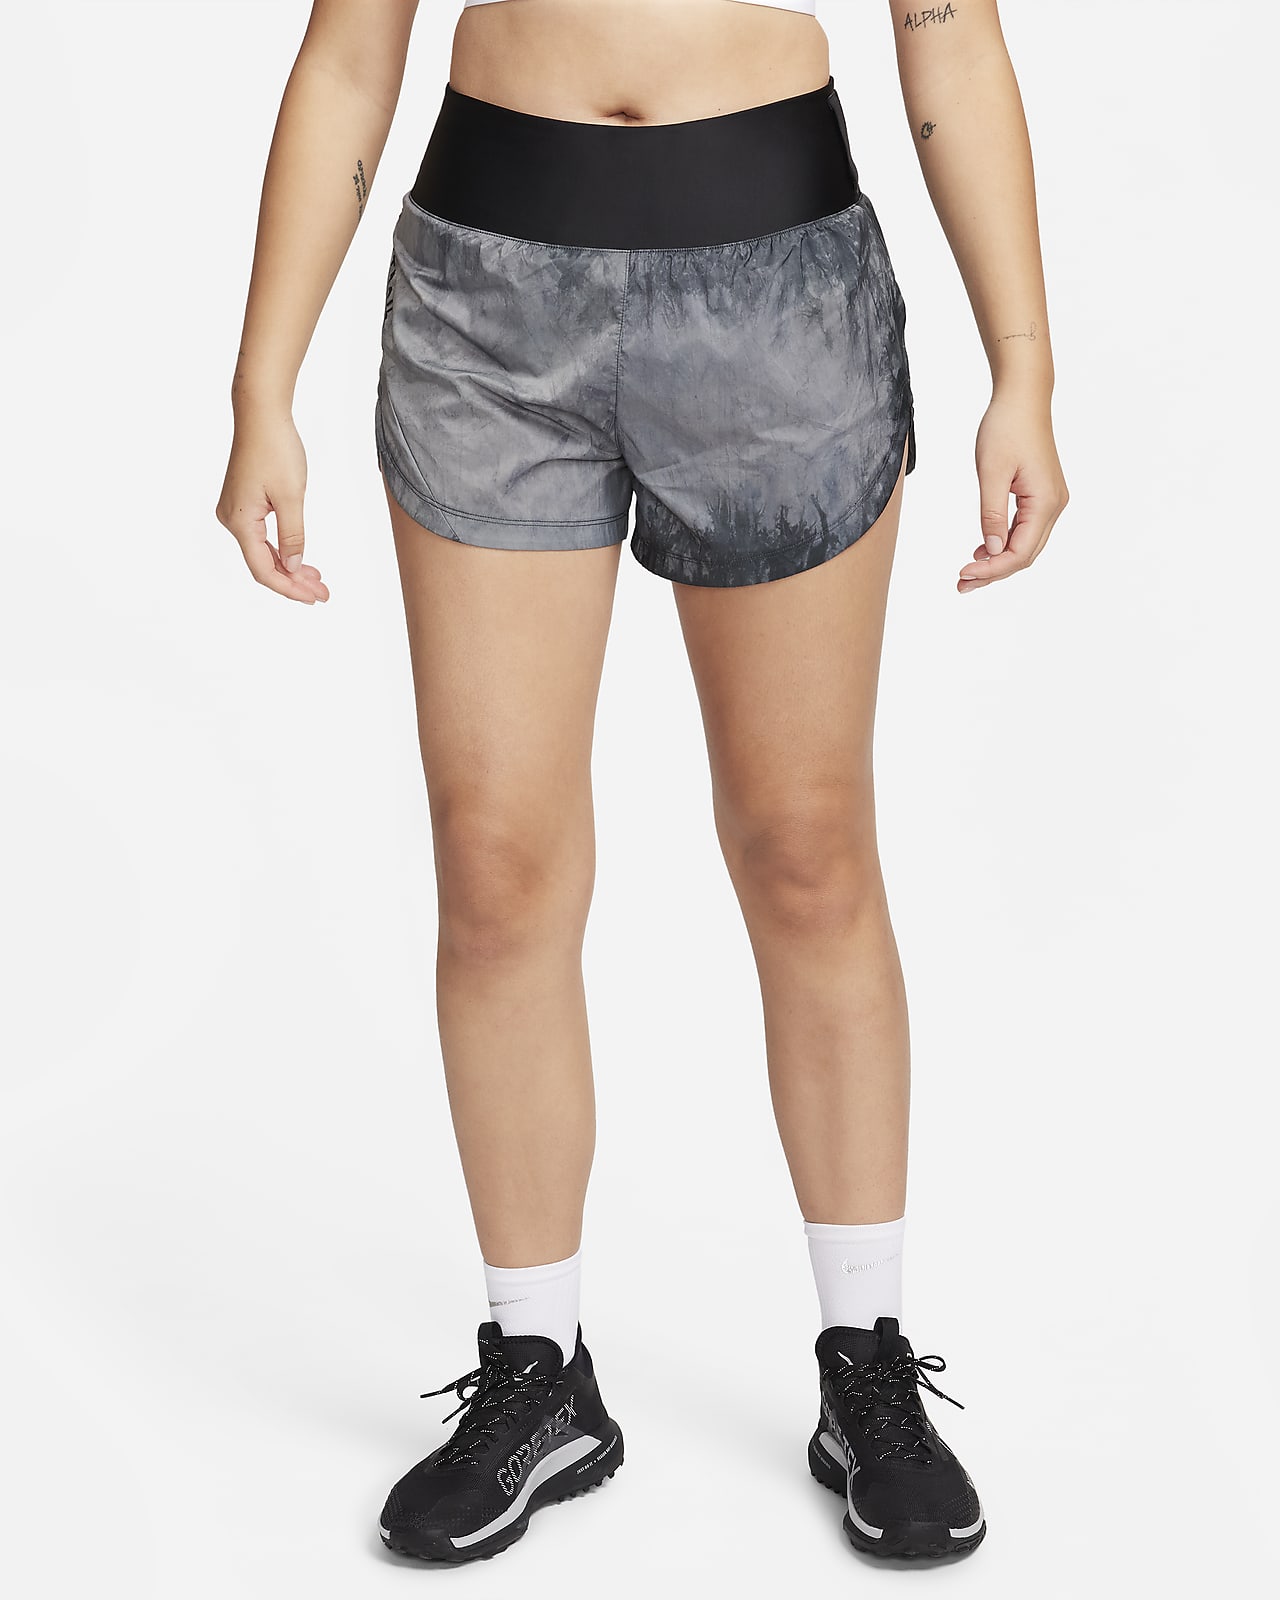 Γυναικείο σορτς Repel μεσαίου ύψους για τρέξιμο με επένδυση εσωτερικού σορτς 8 cm Nike Trail